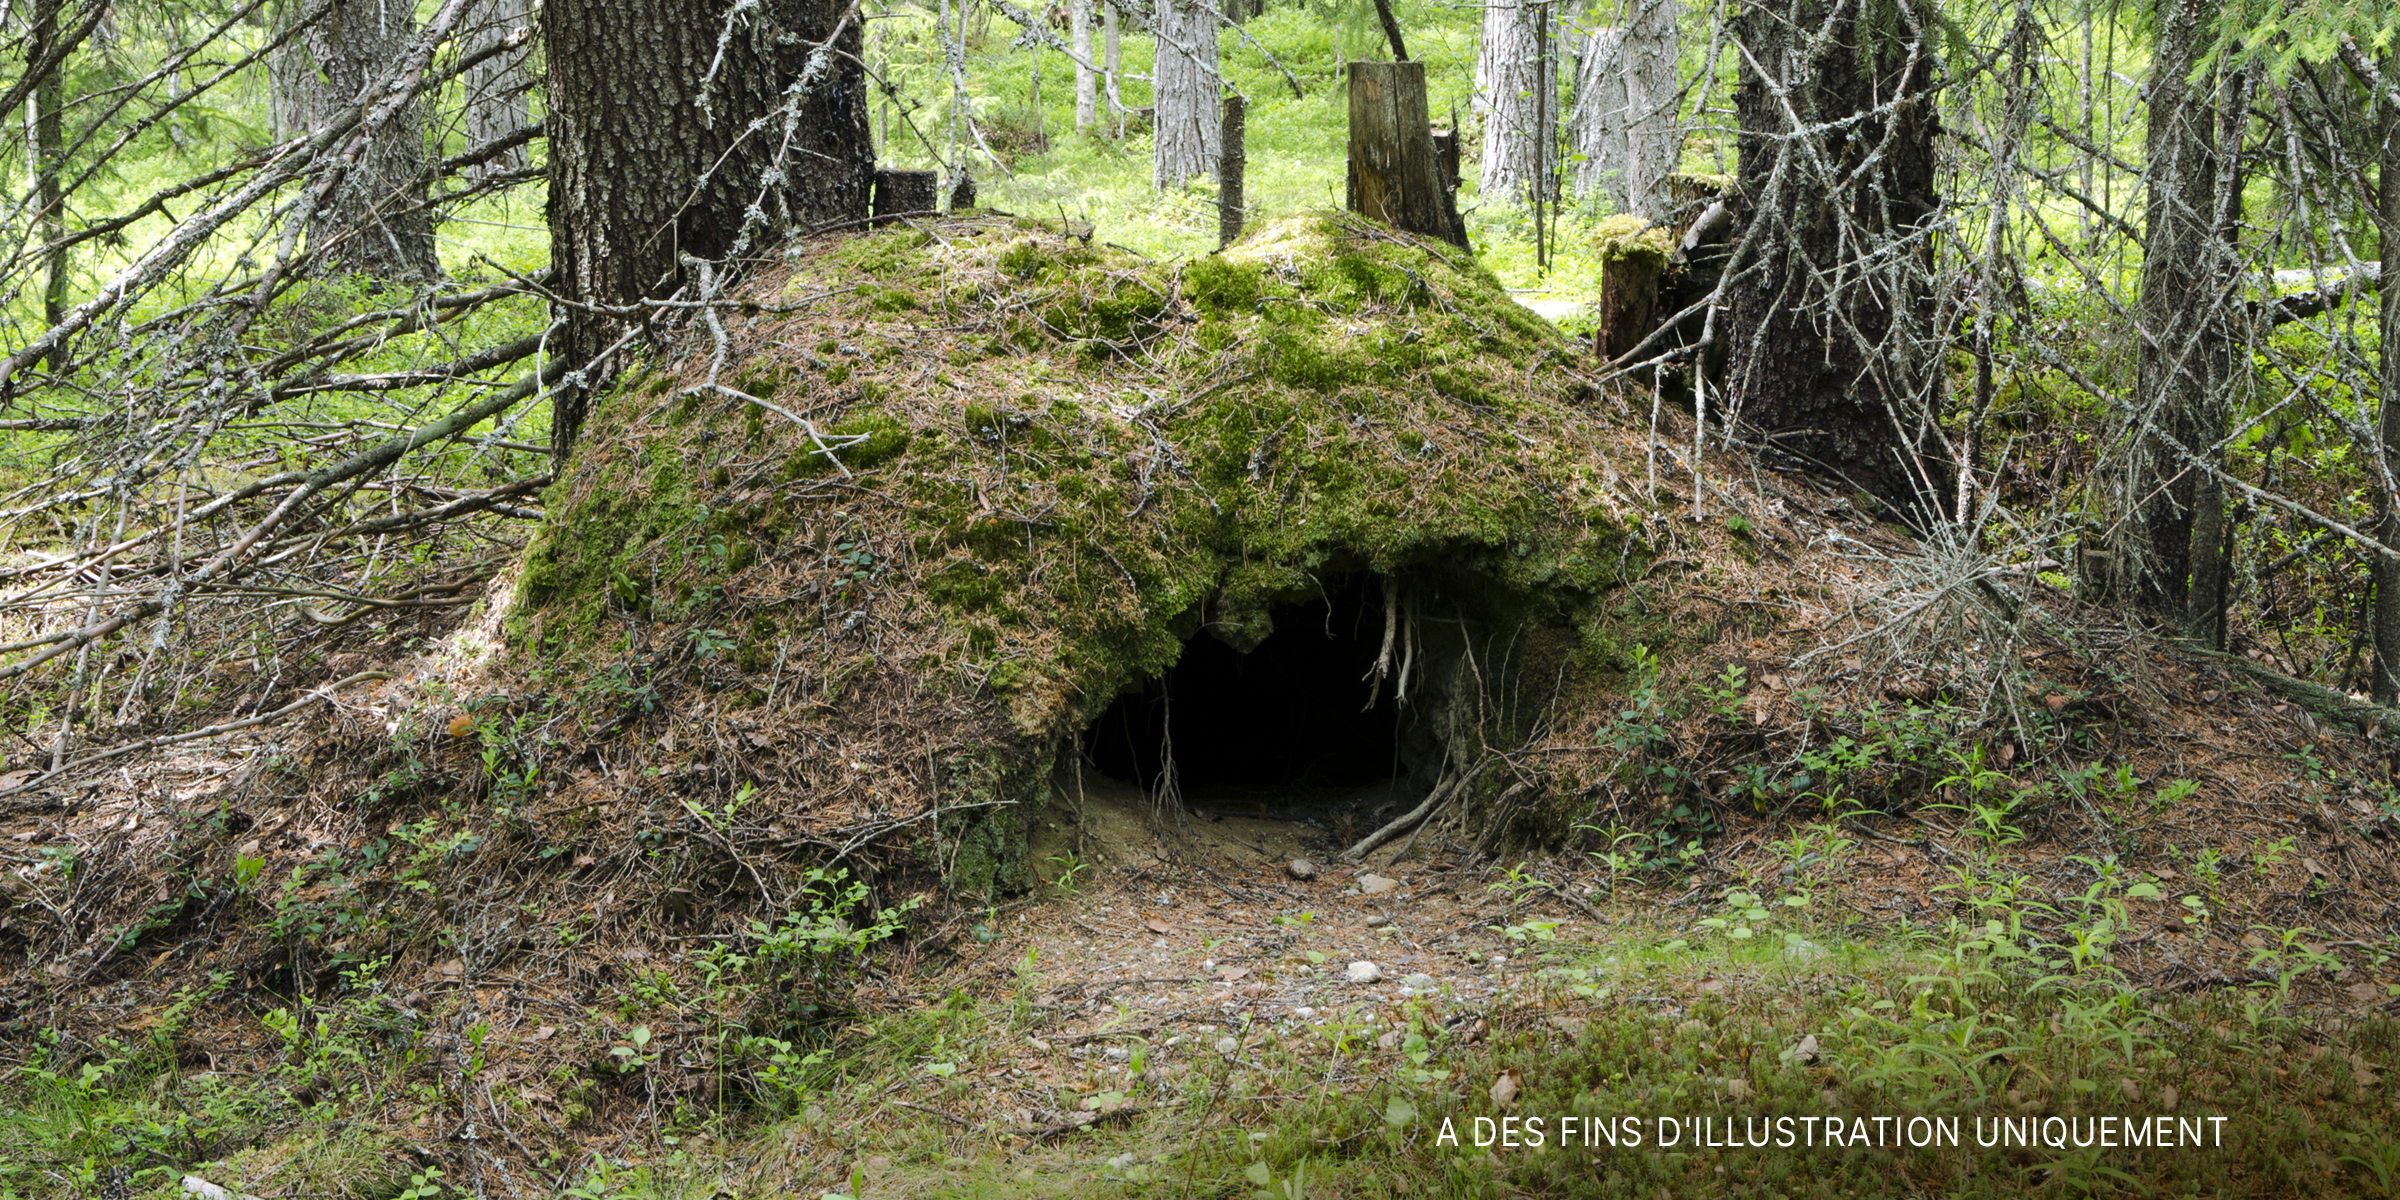 Une grotte entourée d'arbres | Source : Shutterstock